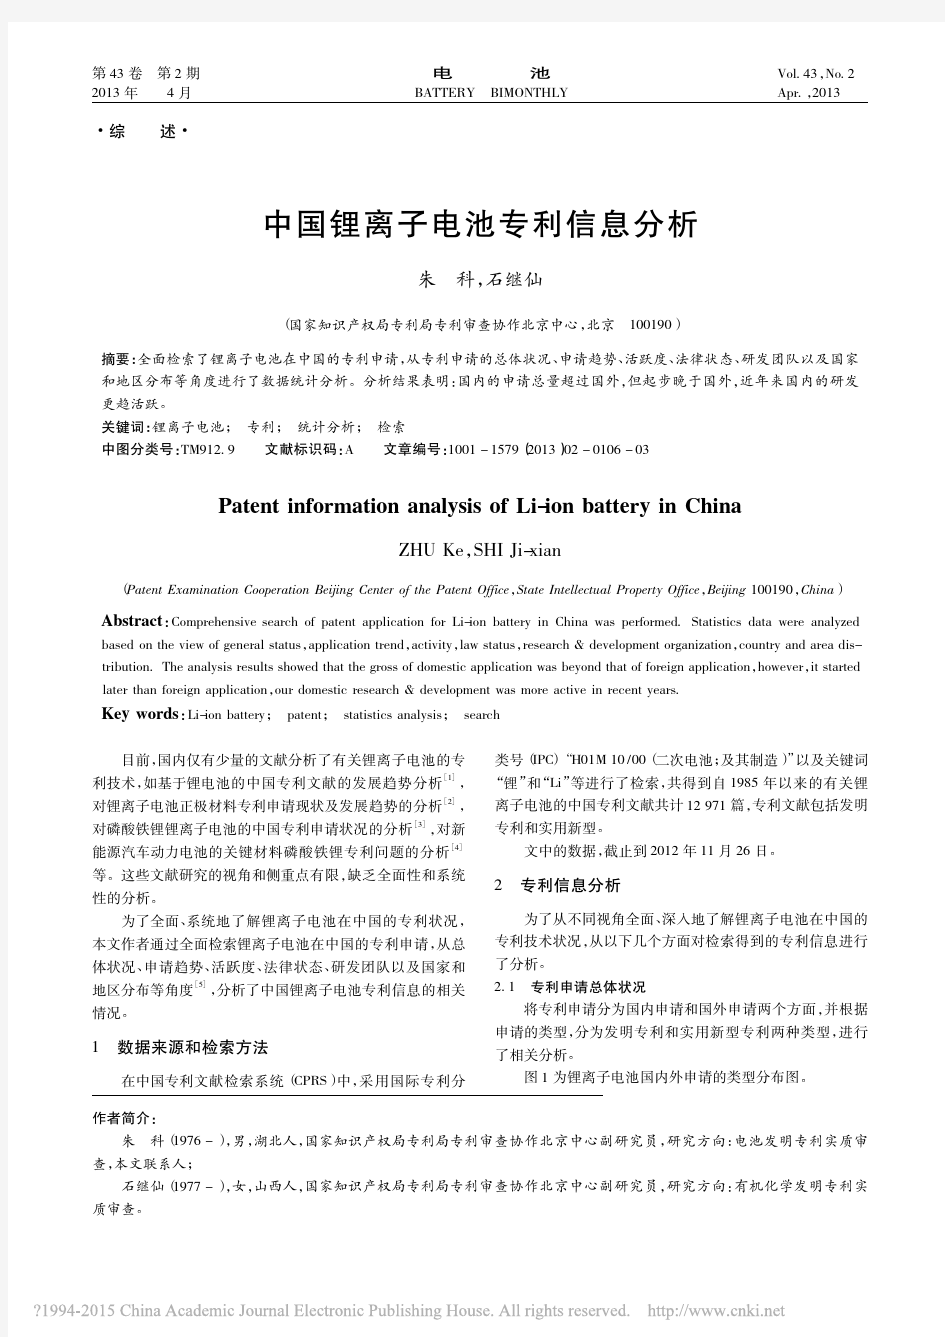 中国锂离子电池专利信息分析_朱科